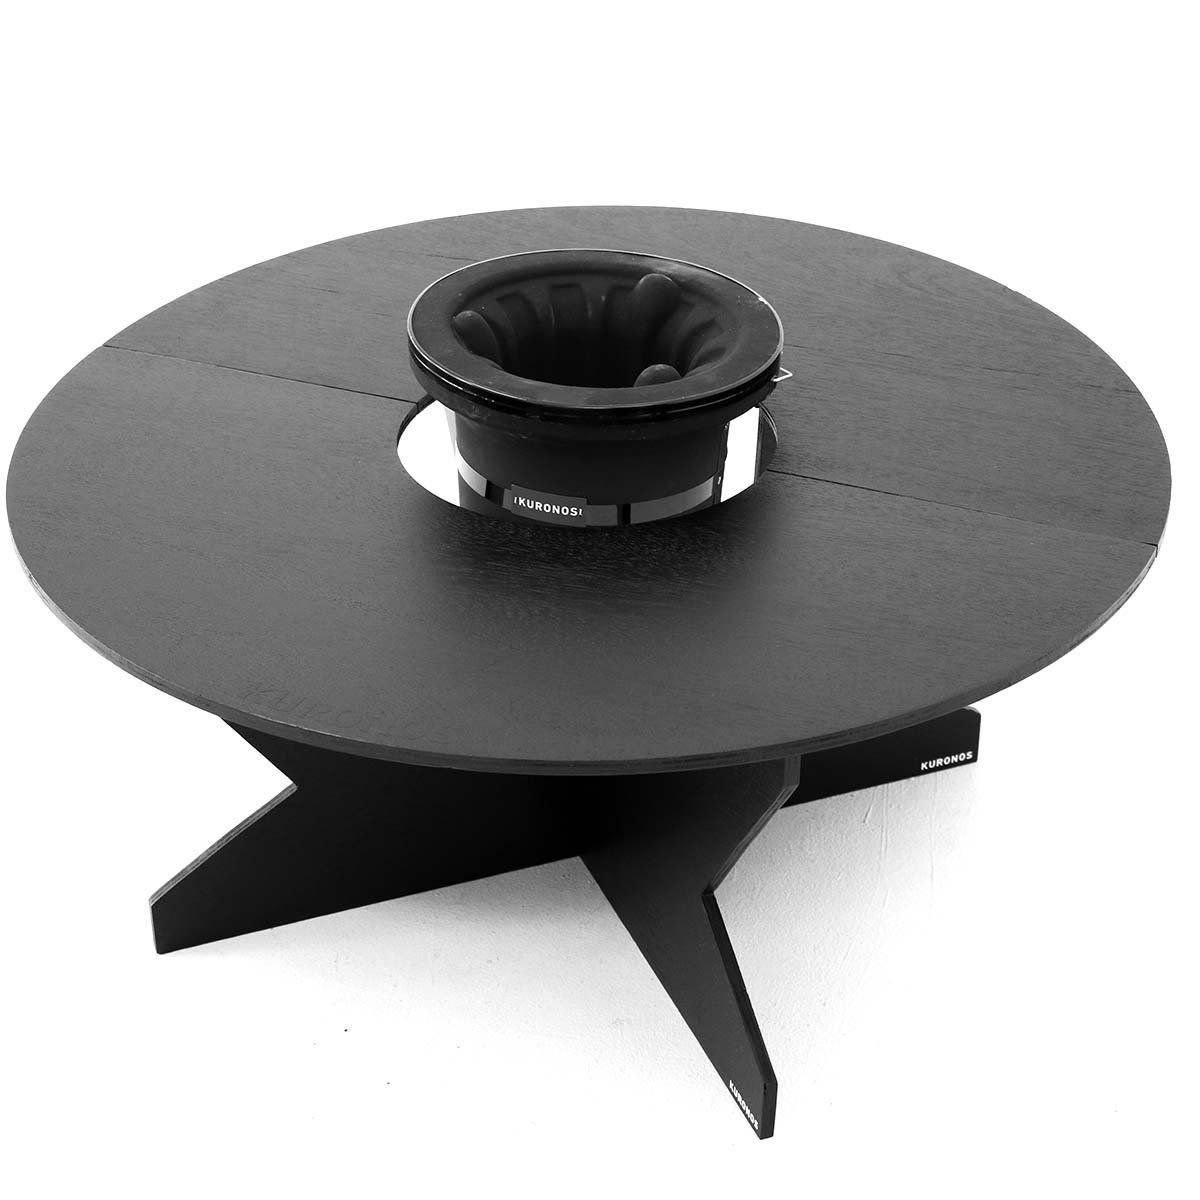 KURONOS クロノス テーブル 黒円卓テーブル 七輪専用 折りたたみ式